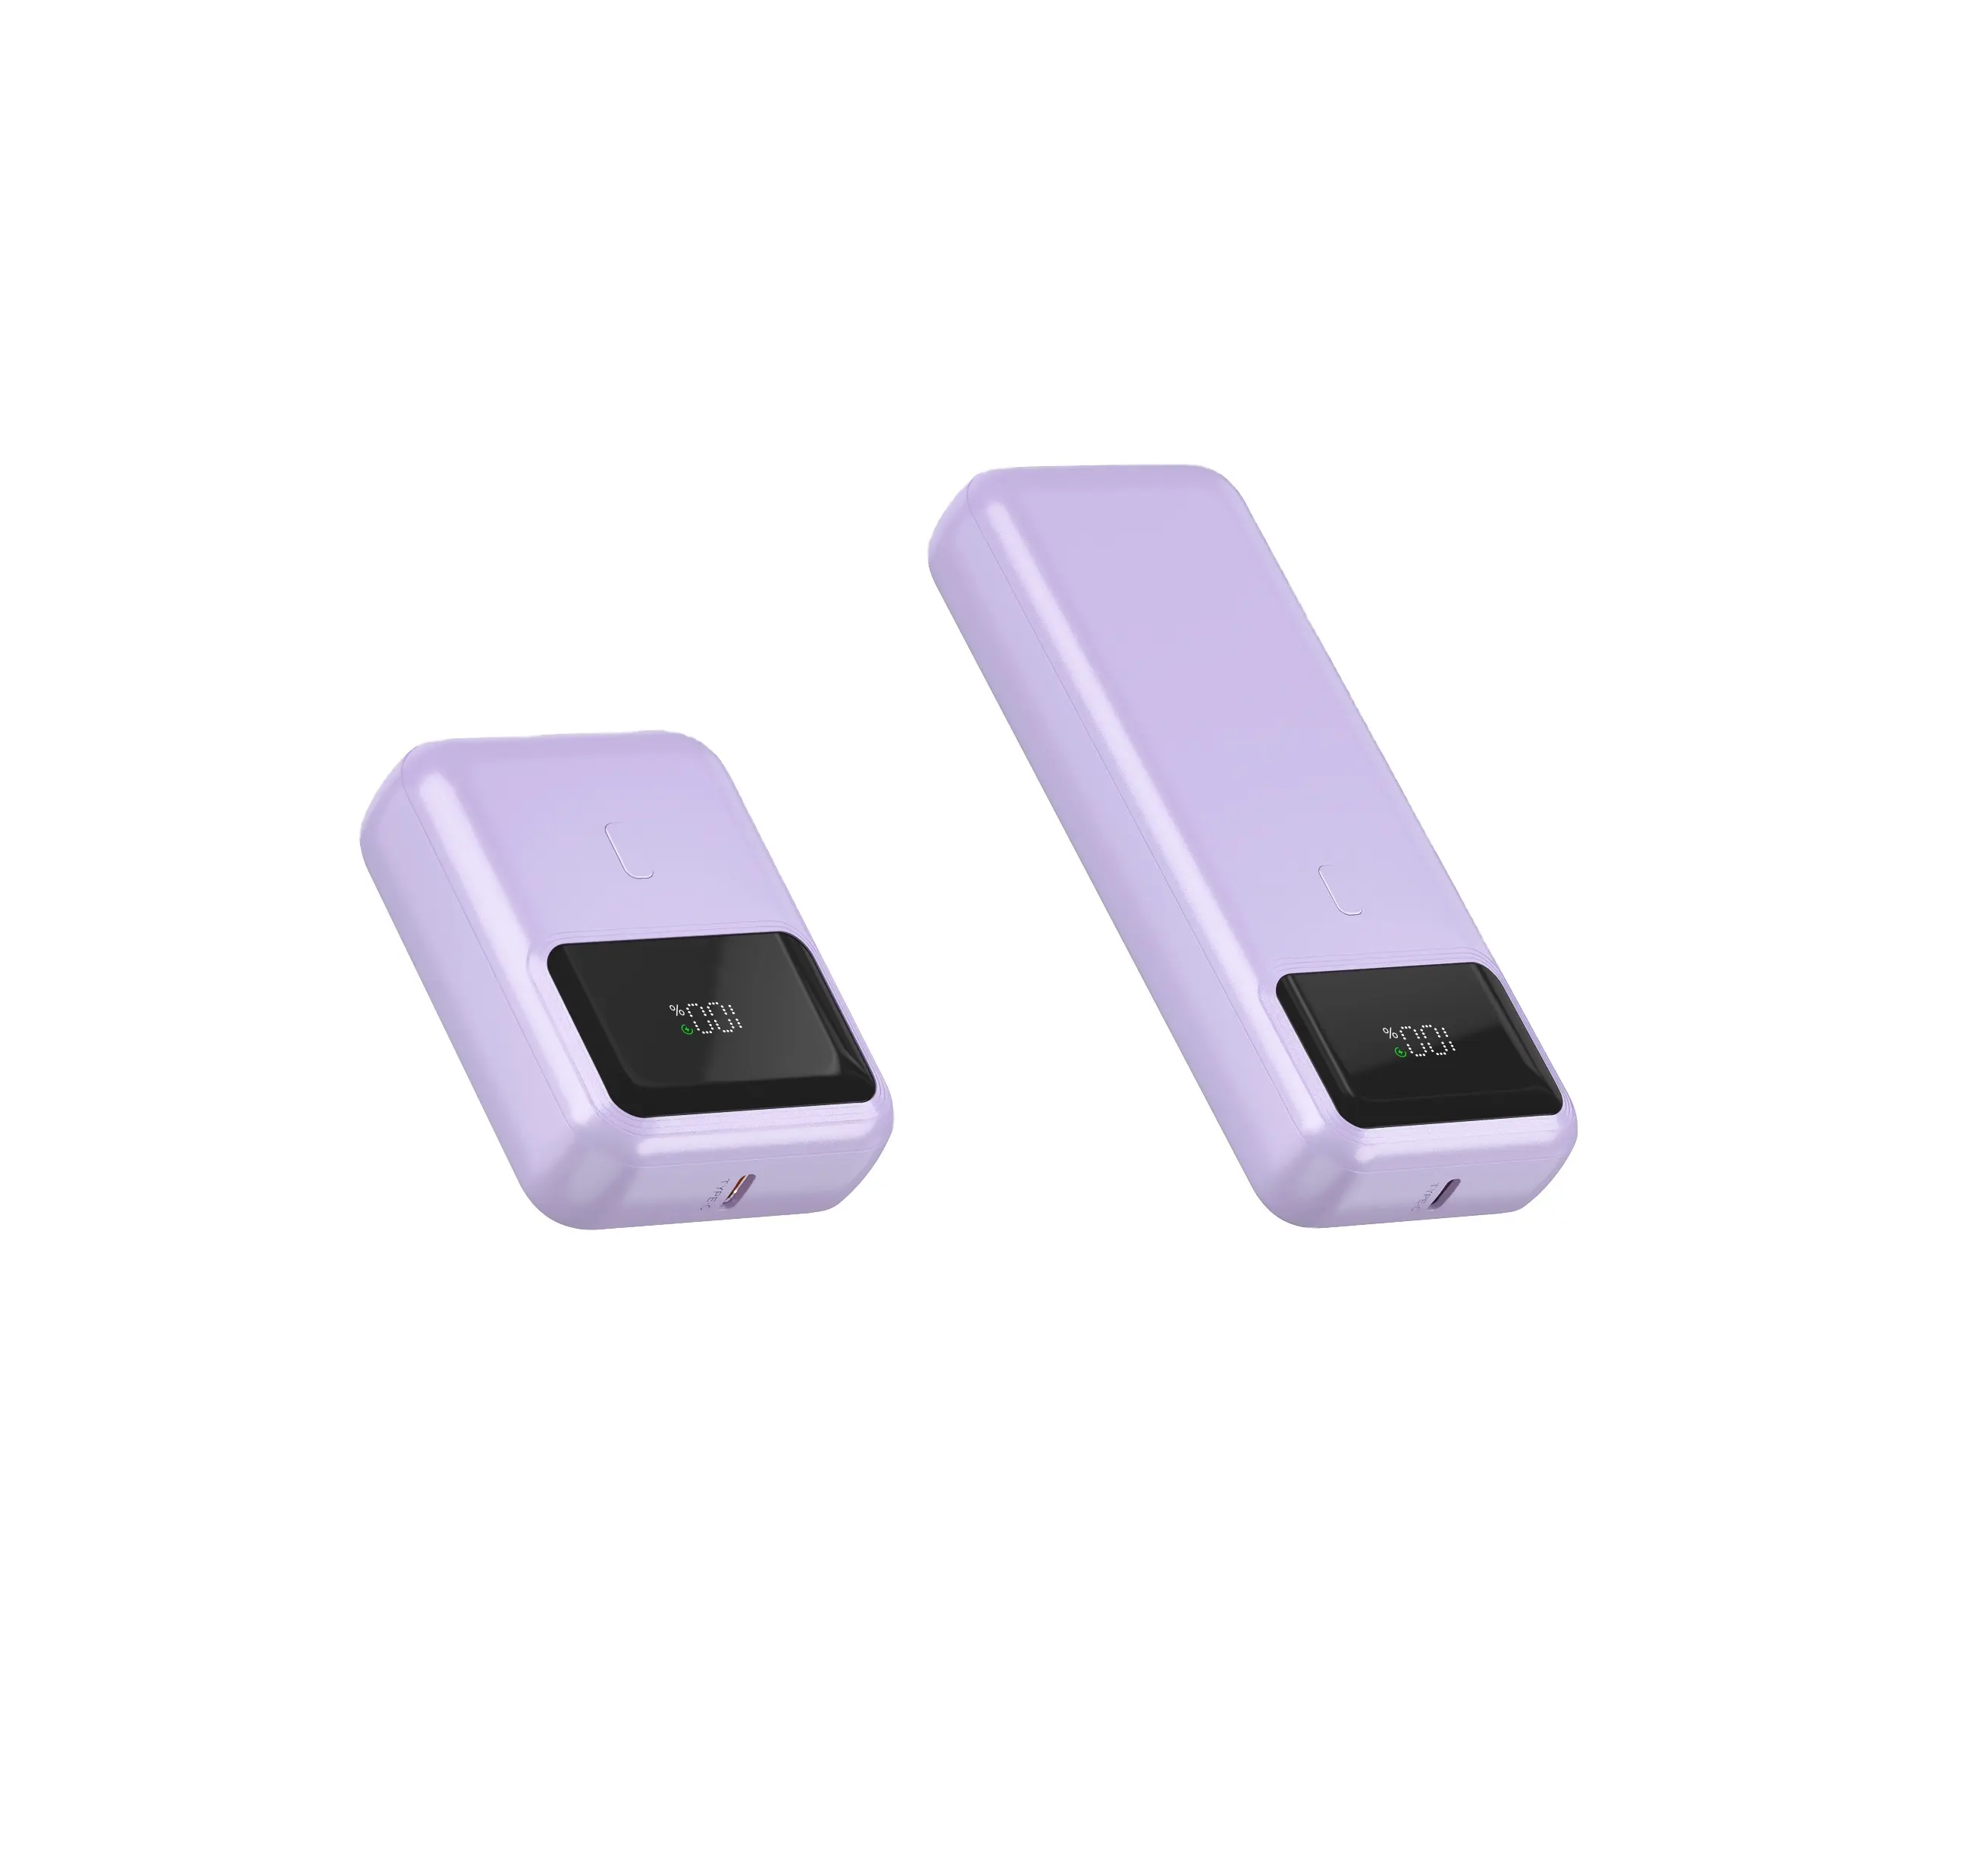 Mini power bank portatile buon prezzo per caricabatterie senza fili con stampa regalo caricabatterie di backup di piccole dimensioni